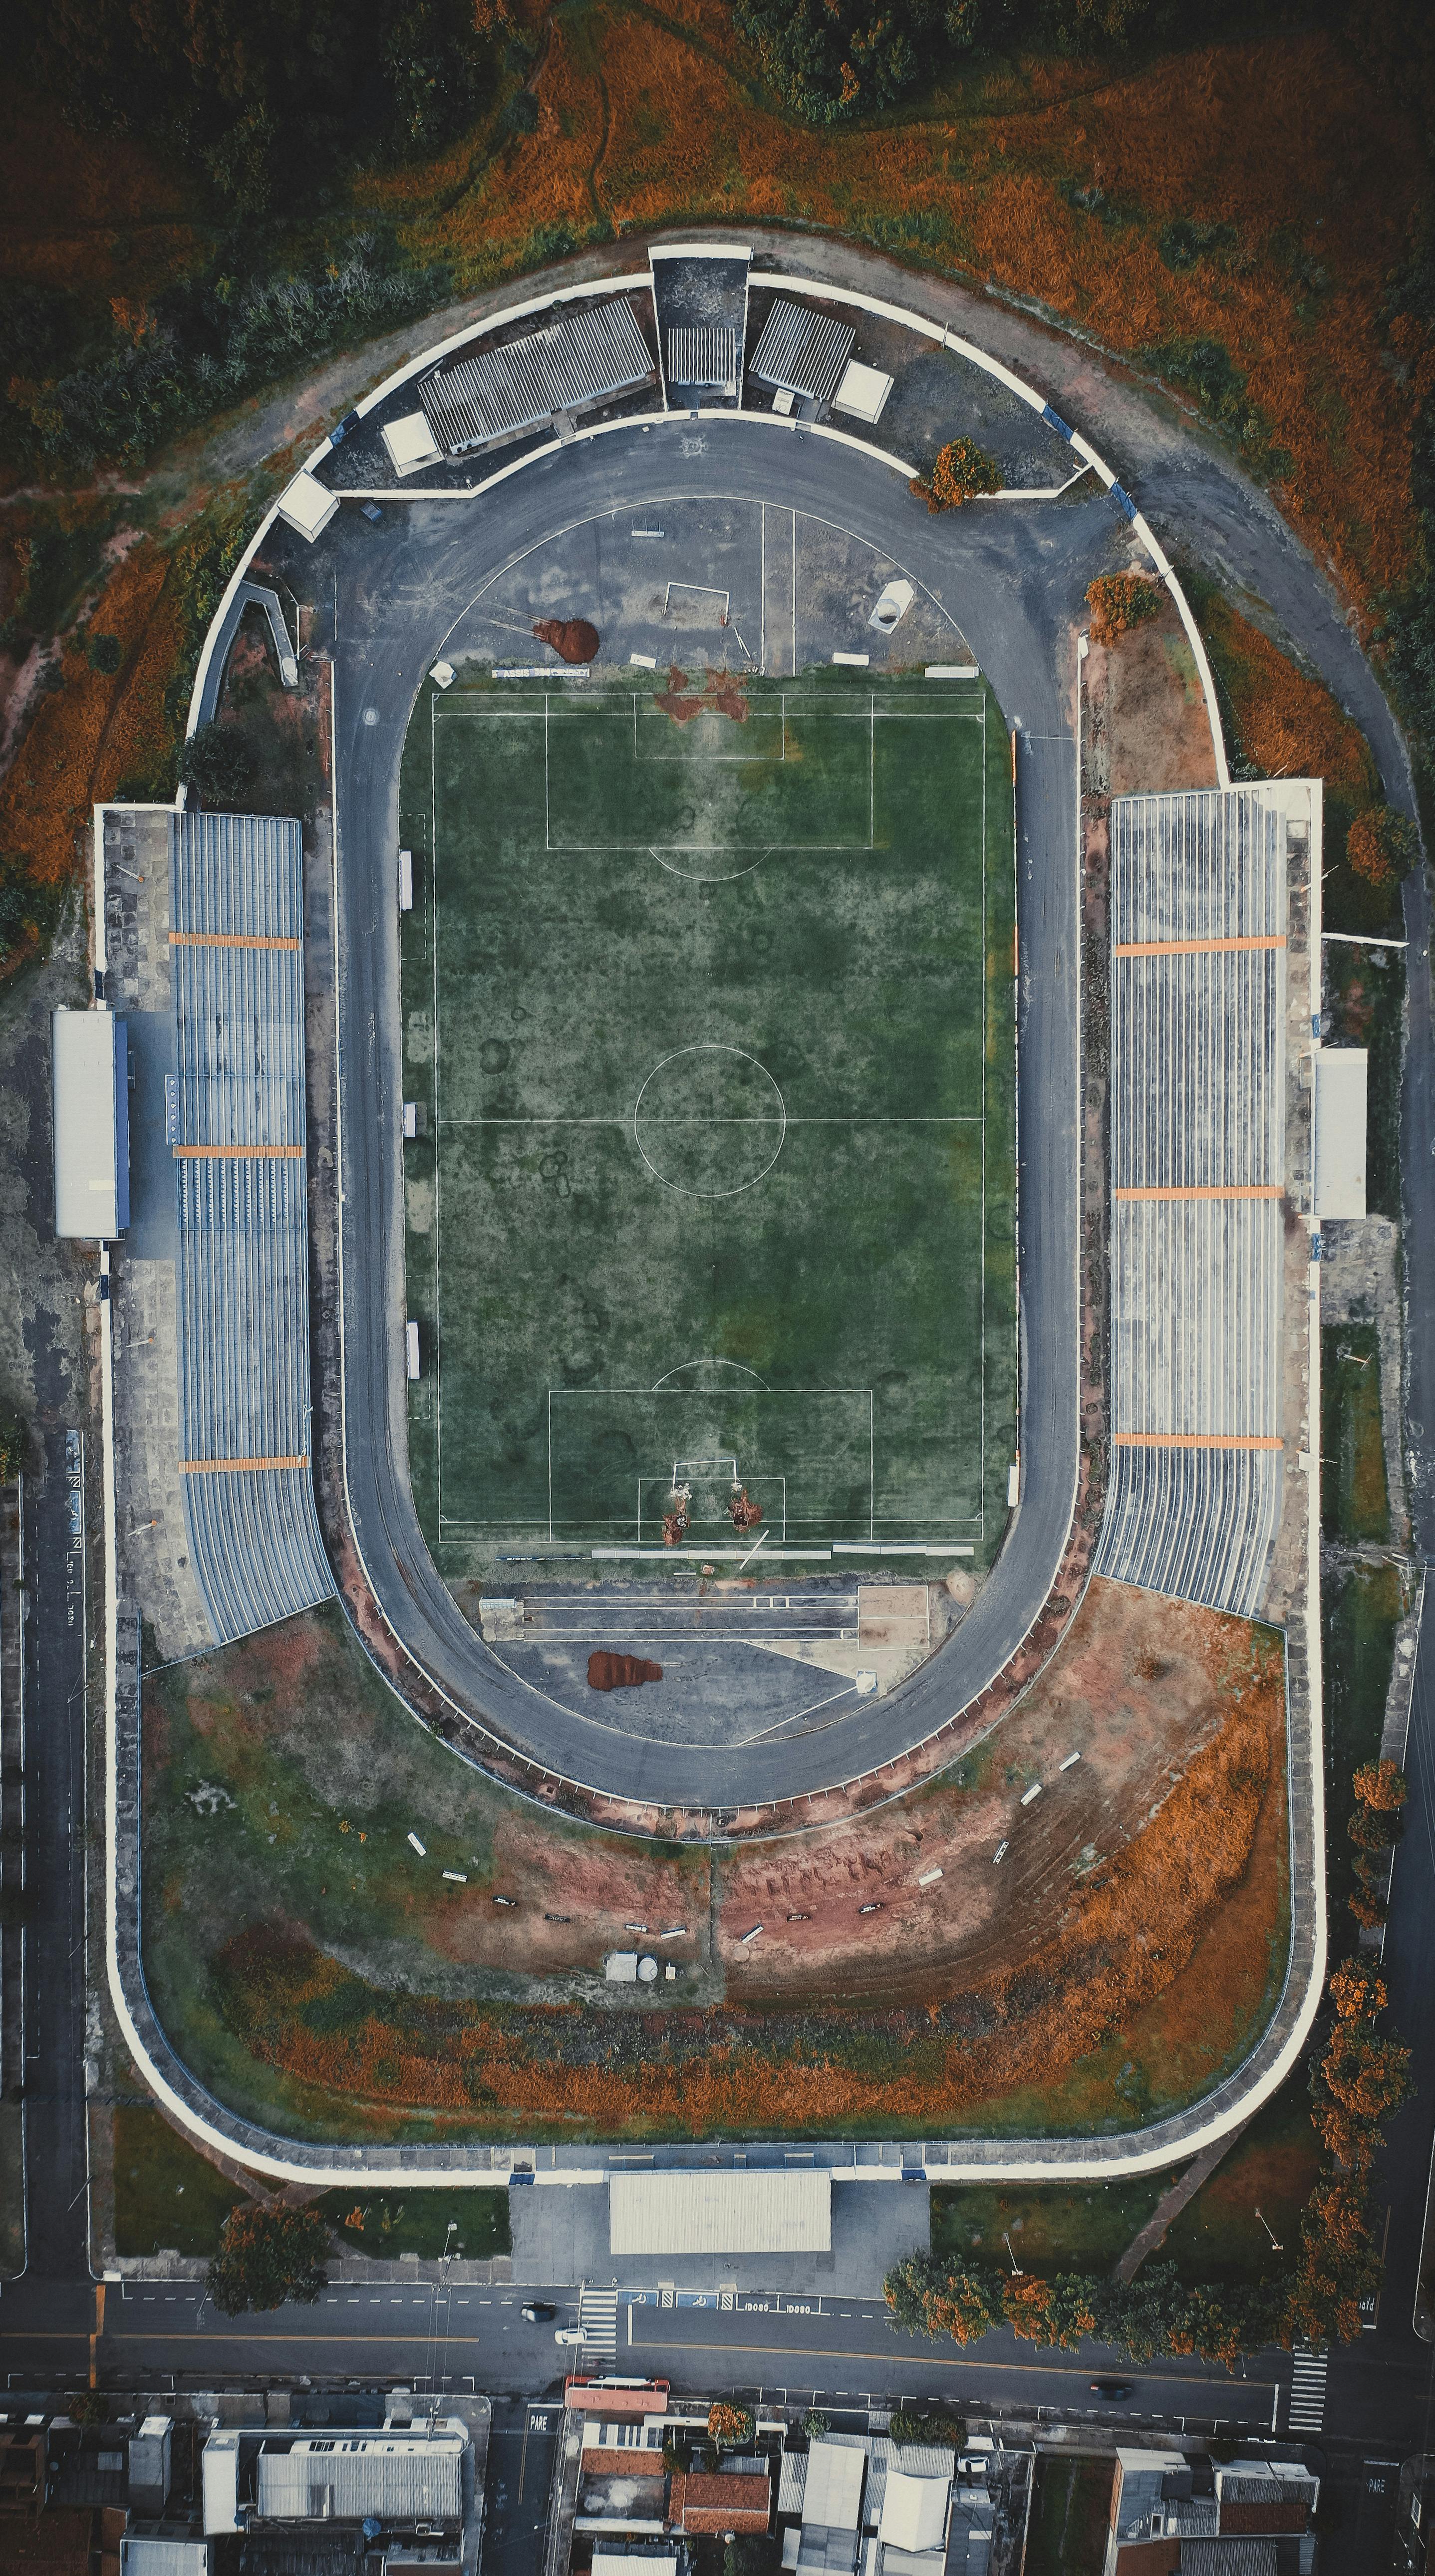 30.000+ melhores imagens de Jogo De Futebol · Download 100% grátis · Fotos  profissionais do Pexels